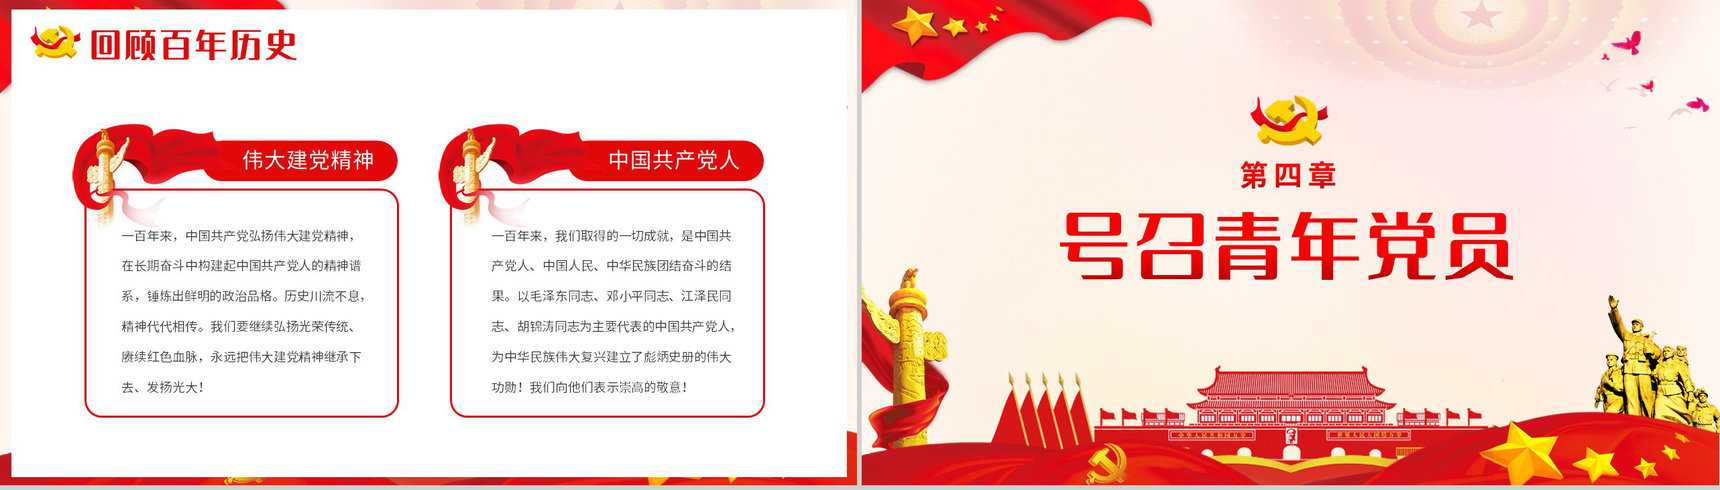 党政风庆祝中国共产党成立一百周年大会的总要讲话PPT模板-8